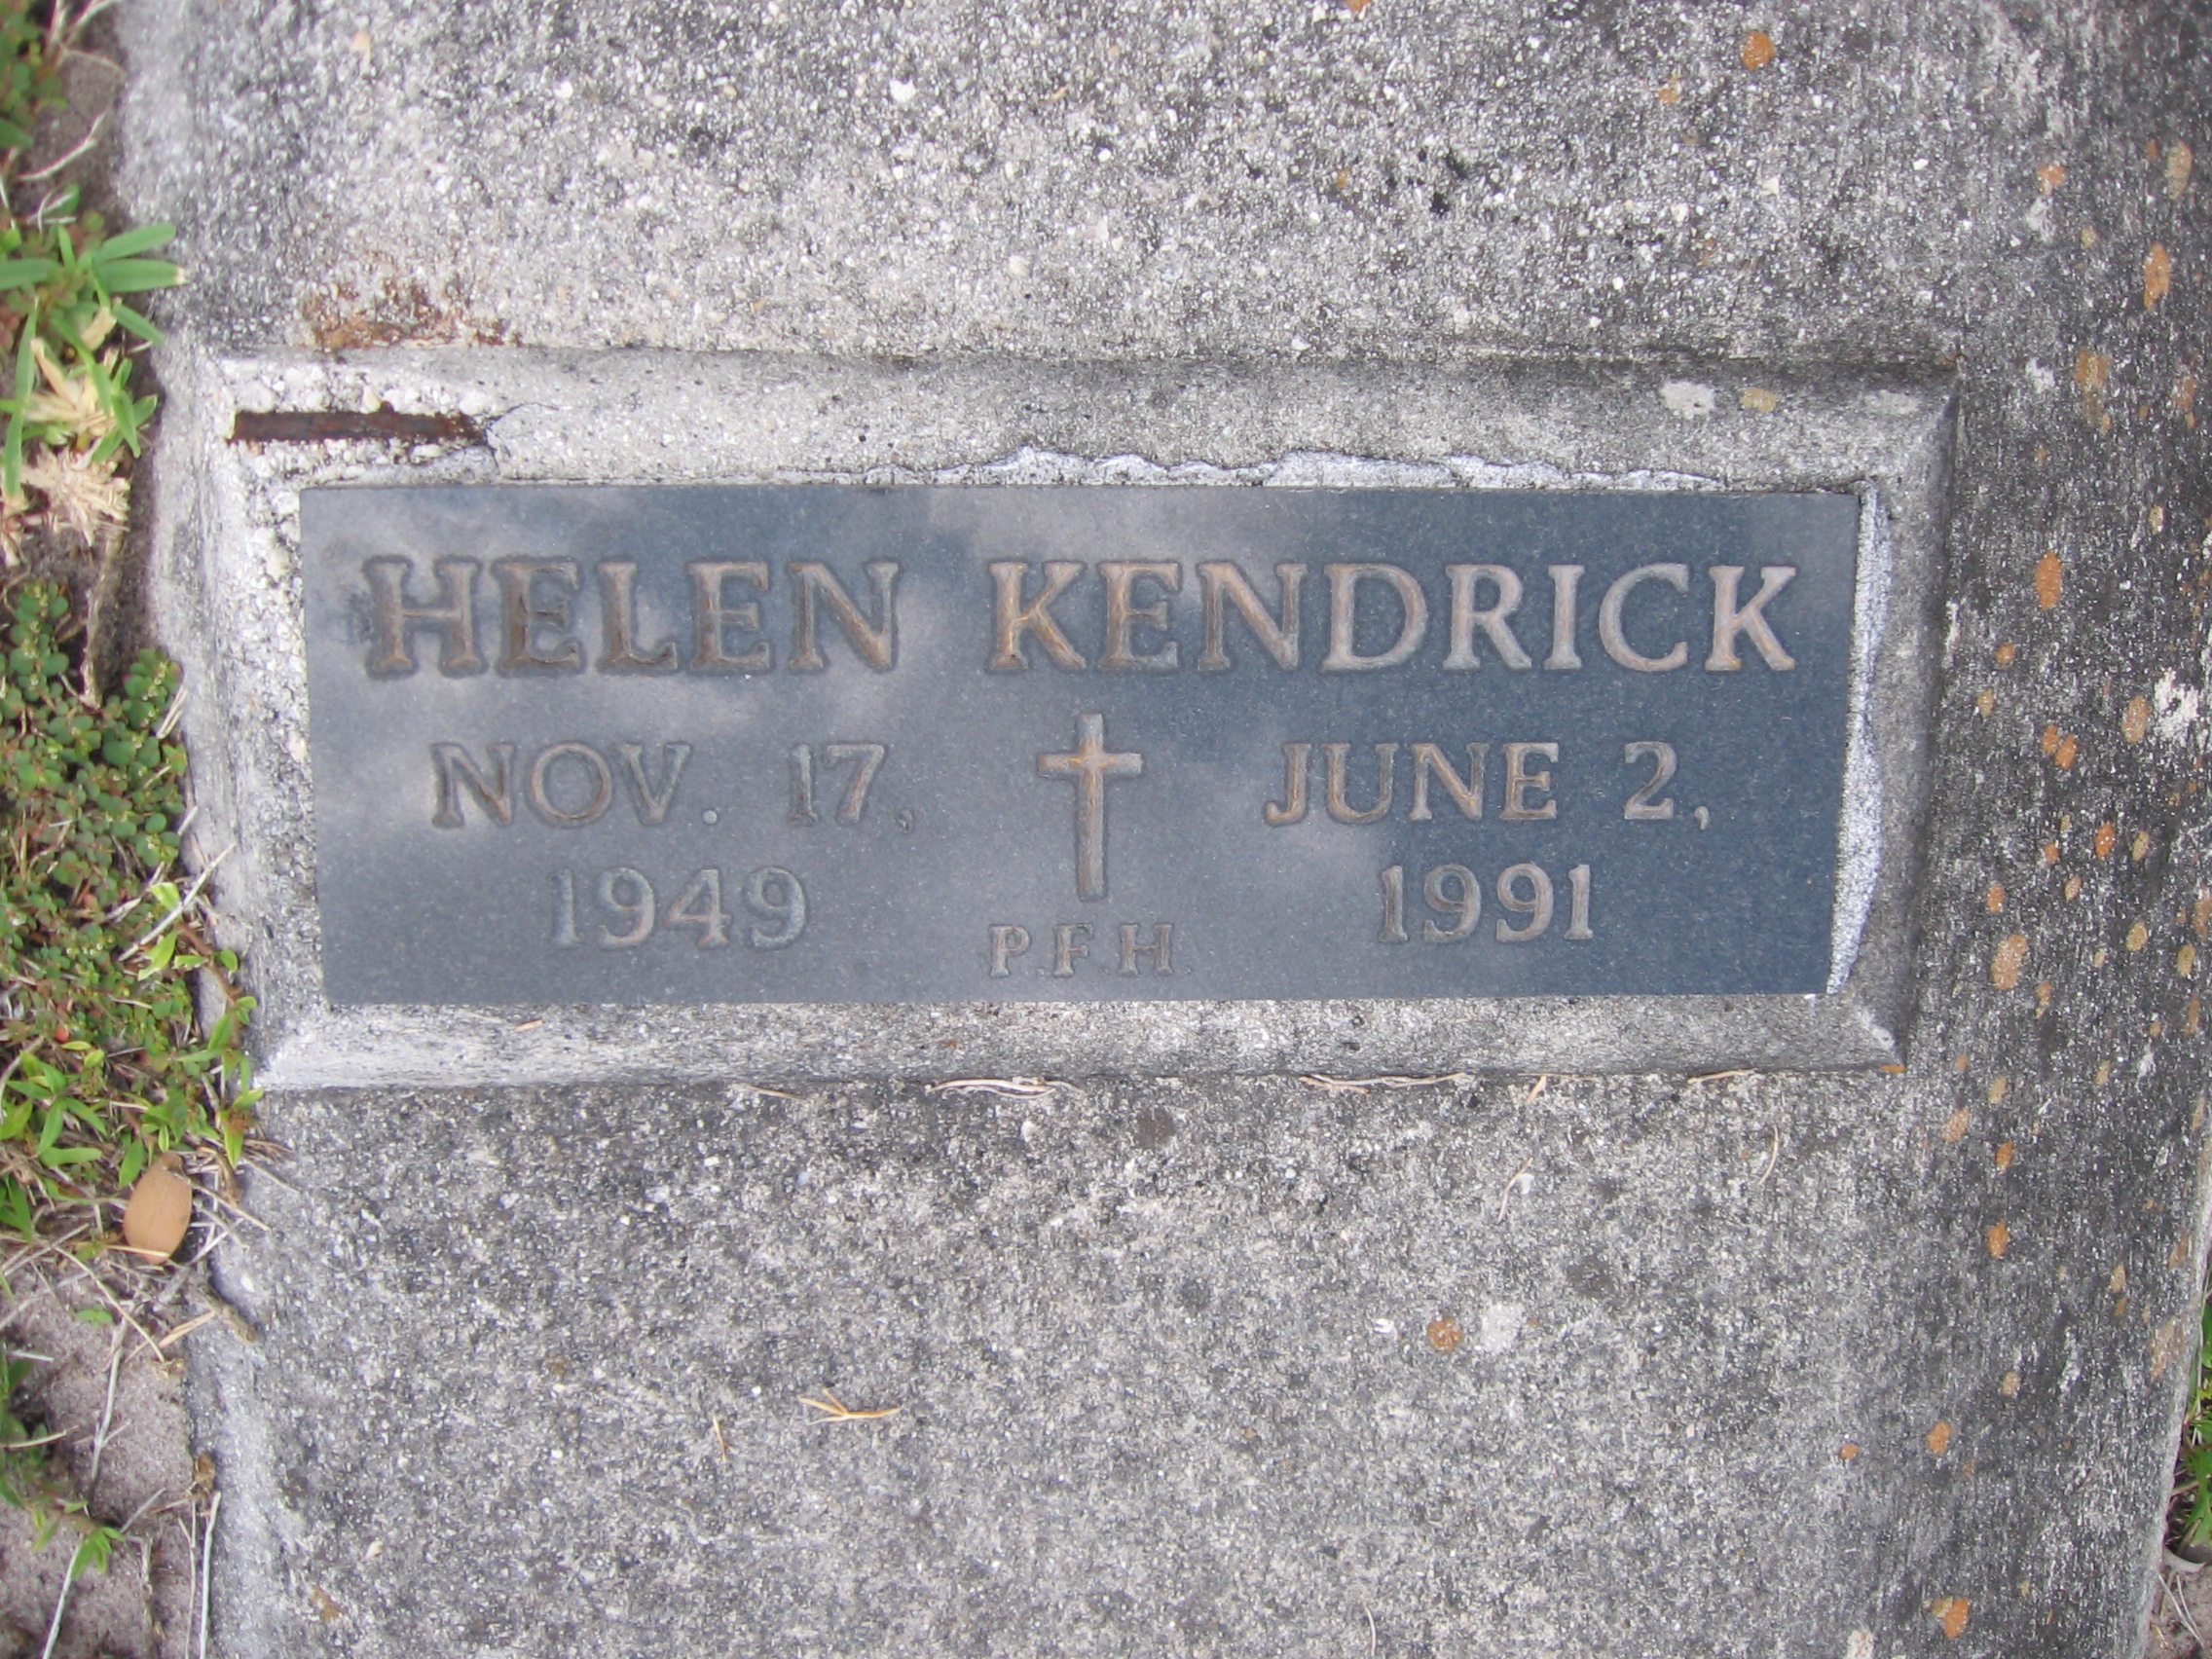 Helen Kendrick